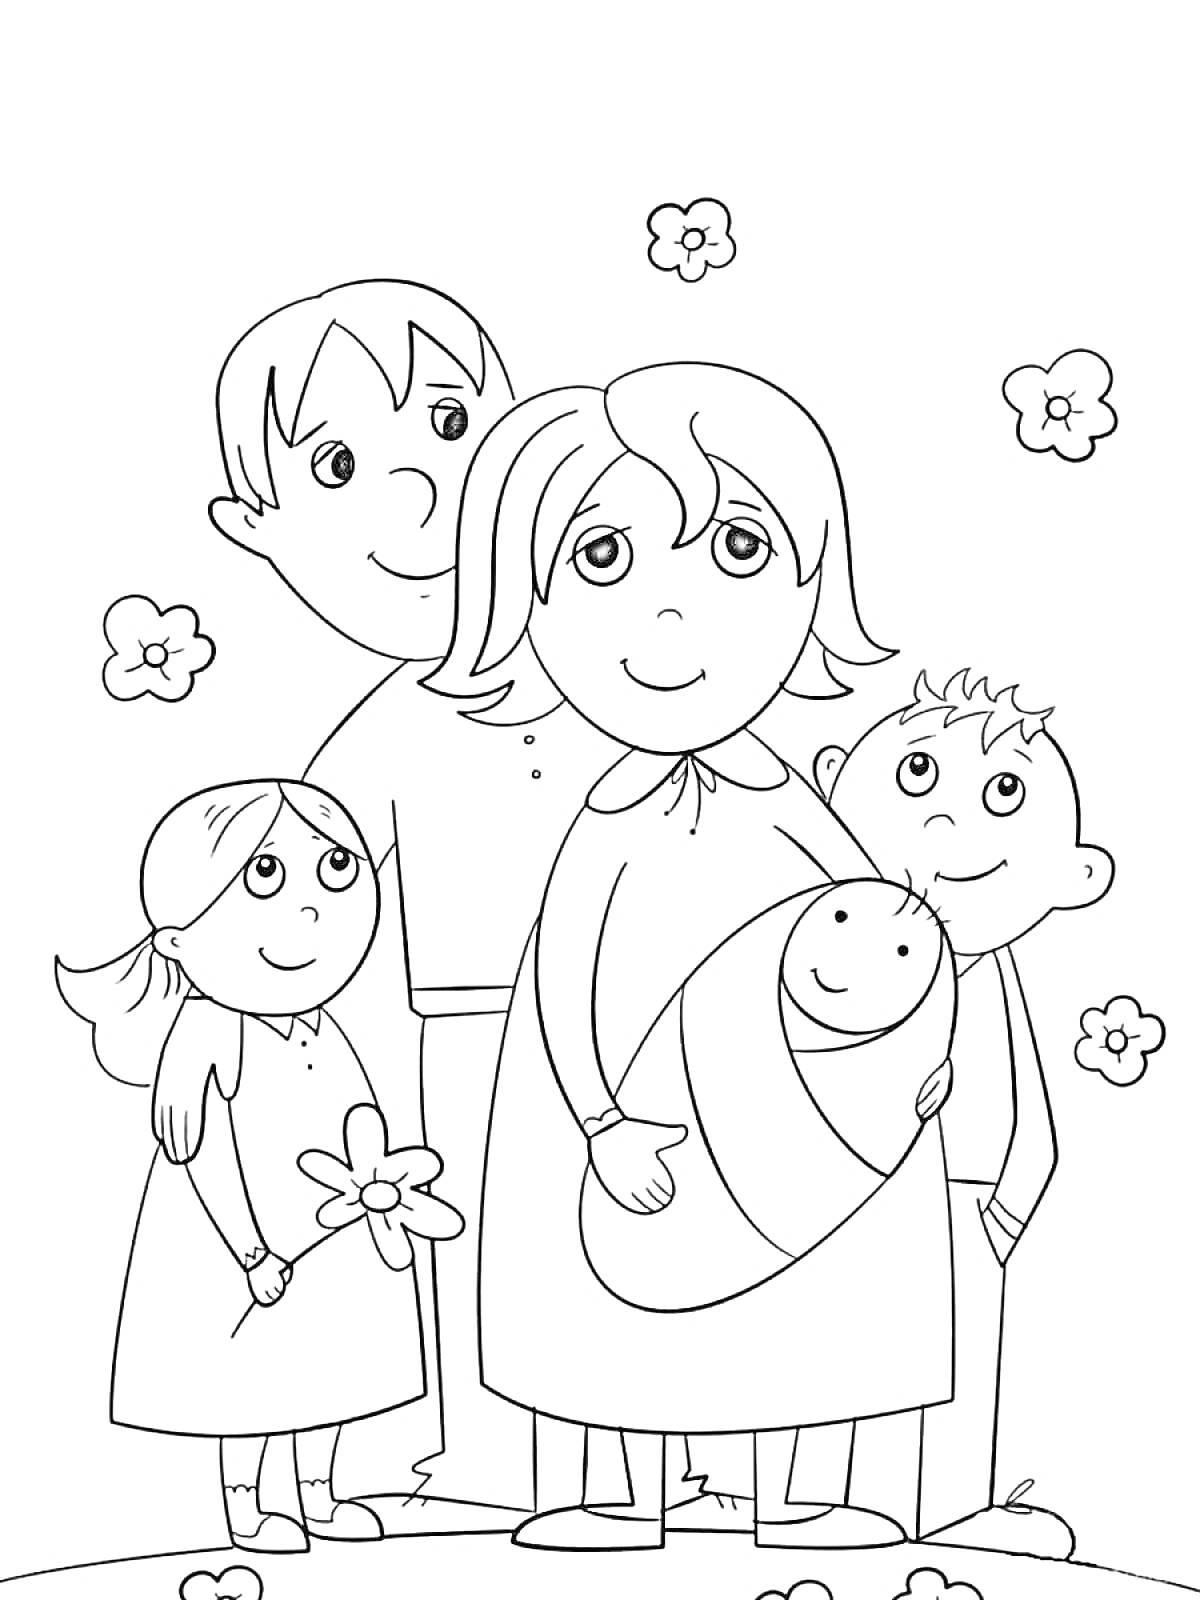 Раскраска Семейный портрет с мамой, папой, двумя детьми и младенцем на природе с цветами